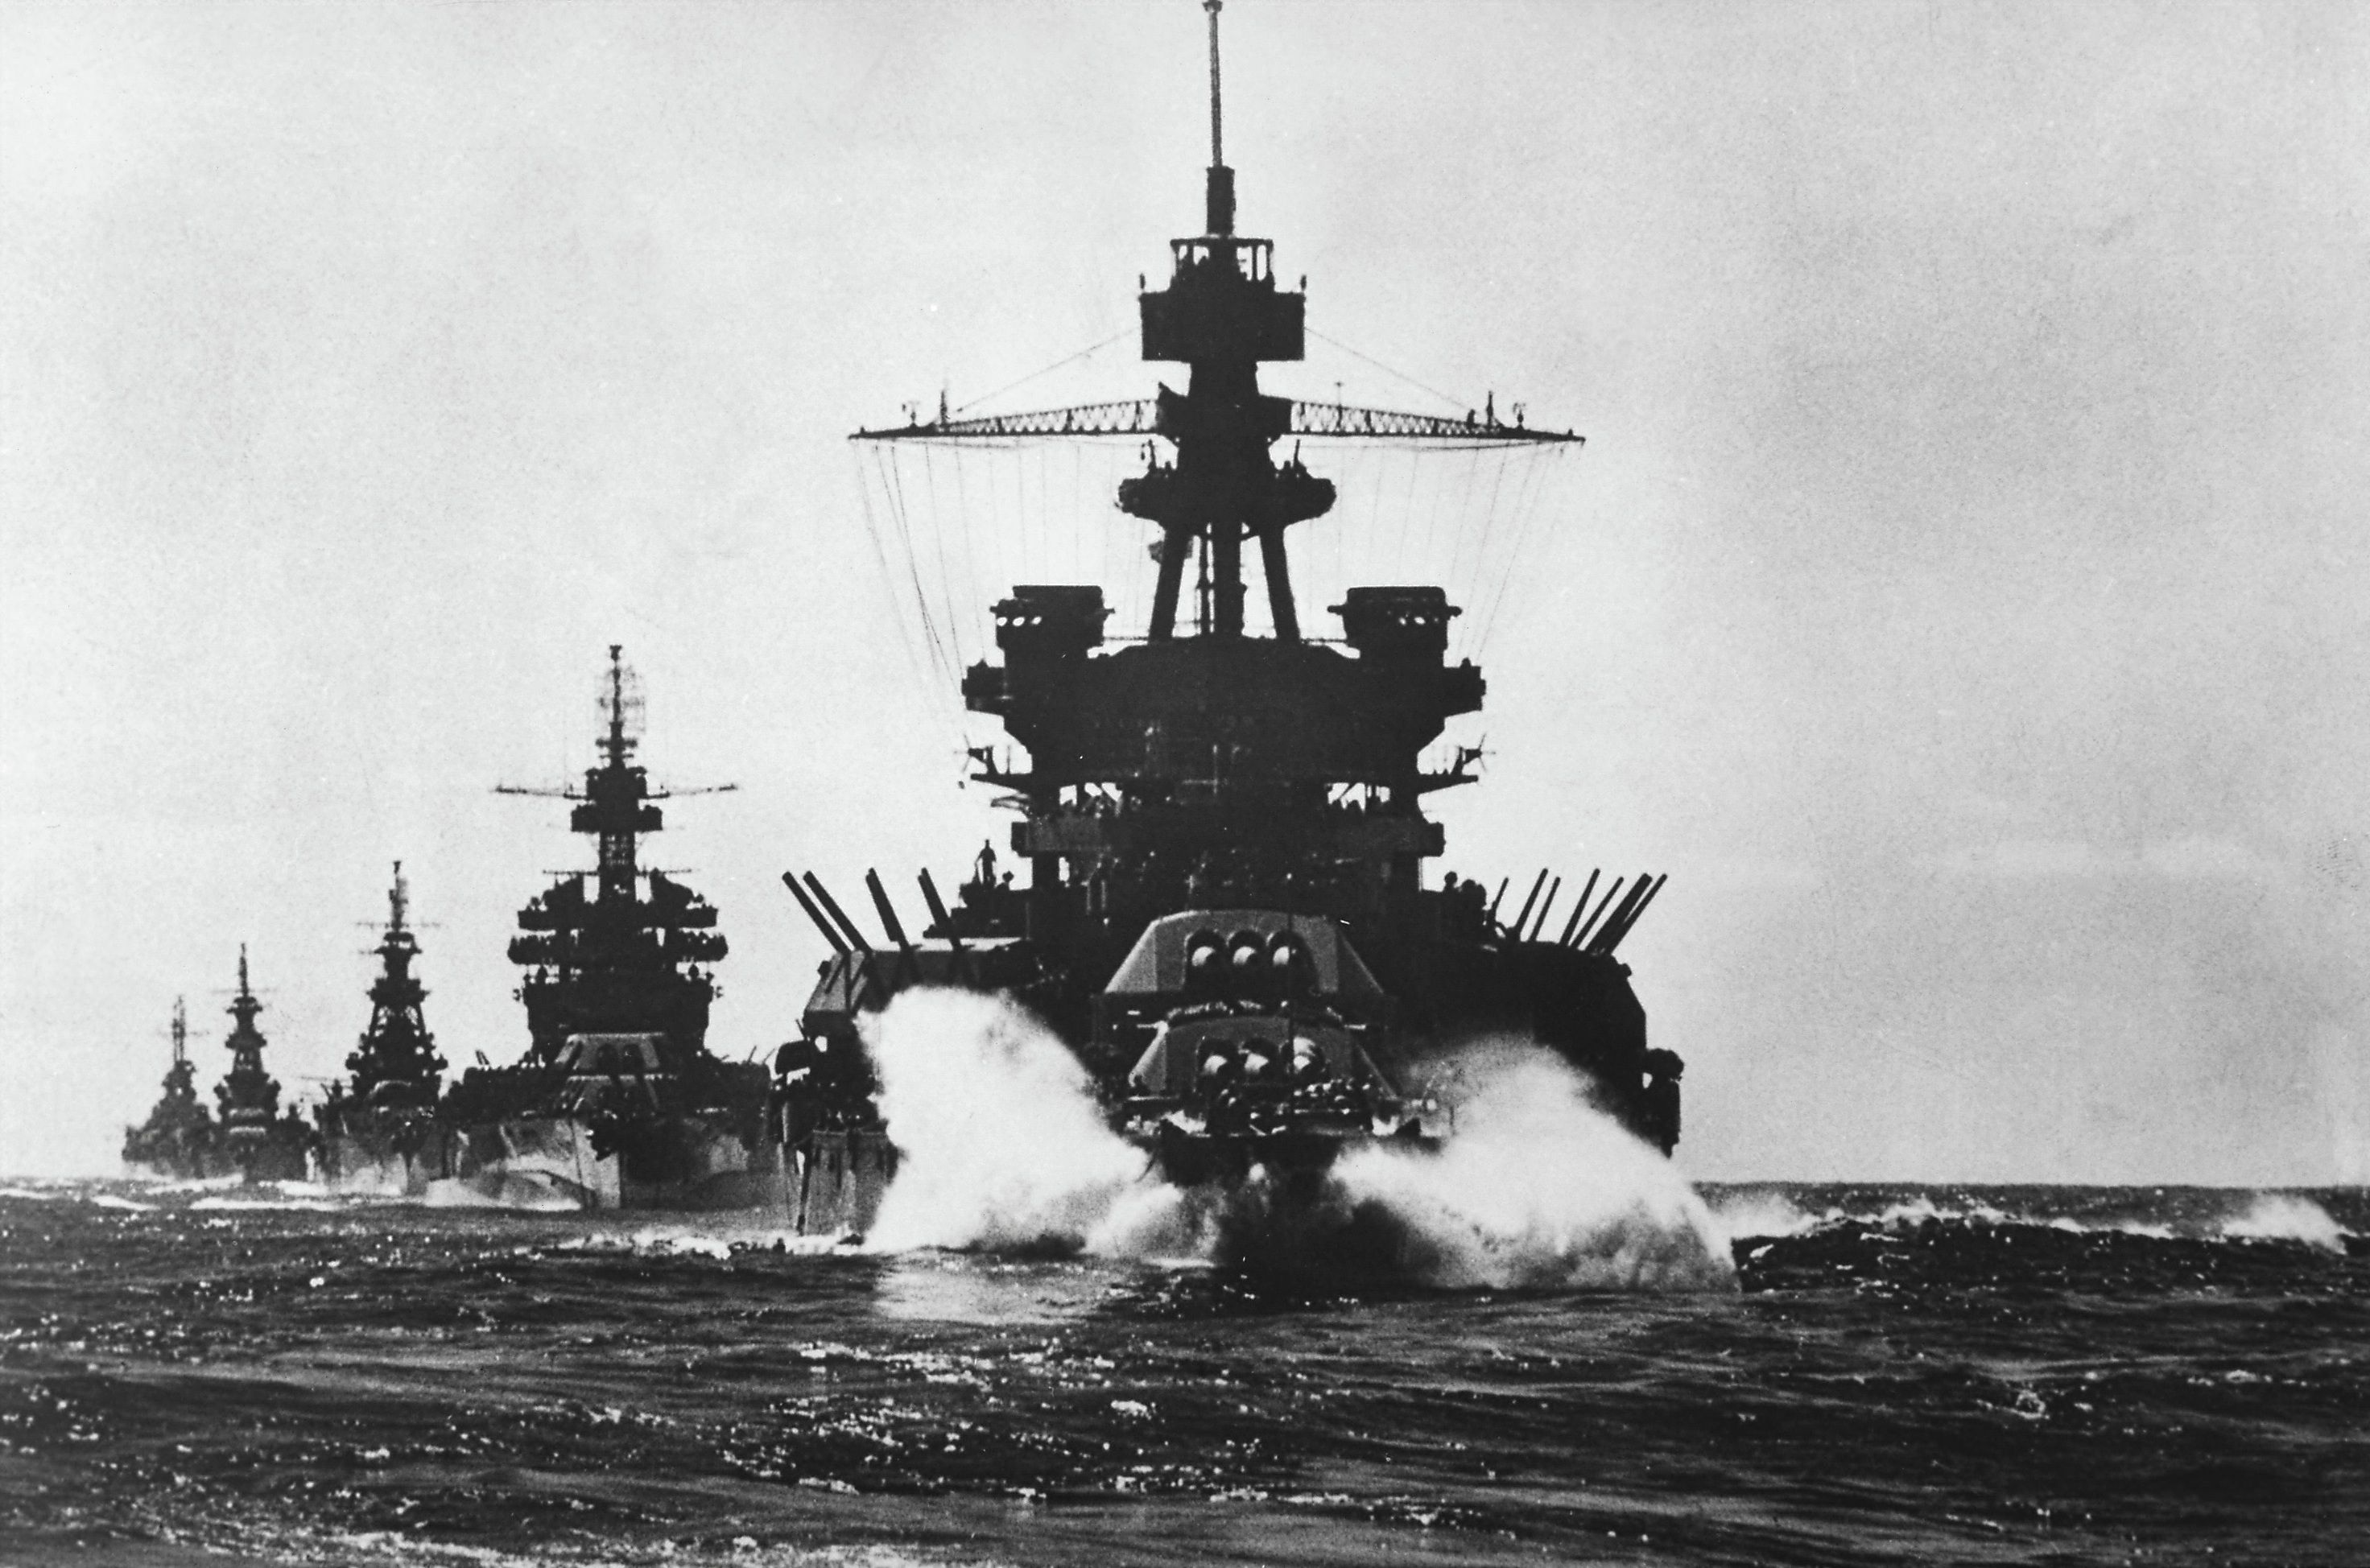 Ww2 Battleships Wallpaperx1948